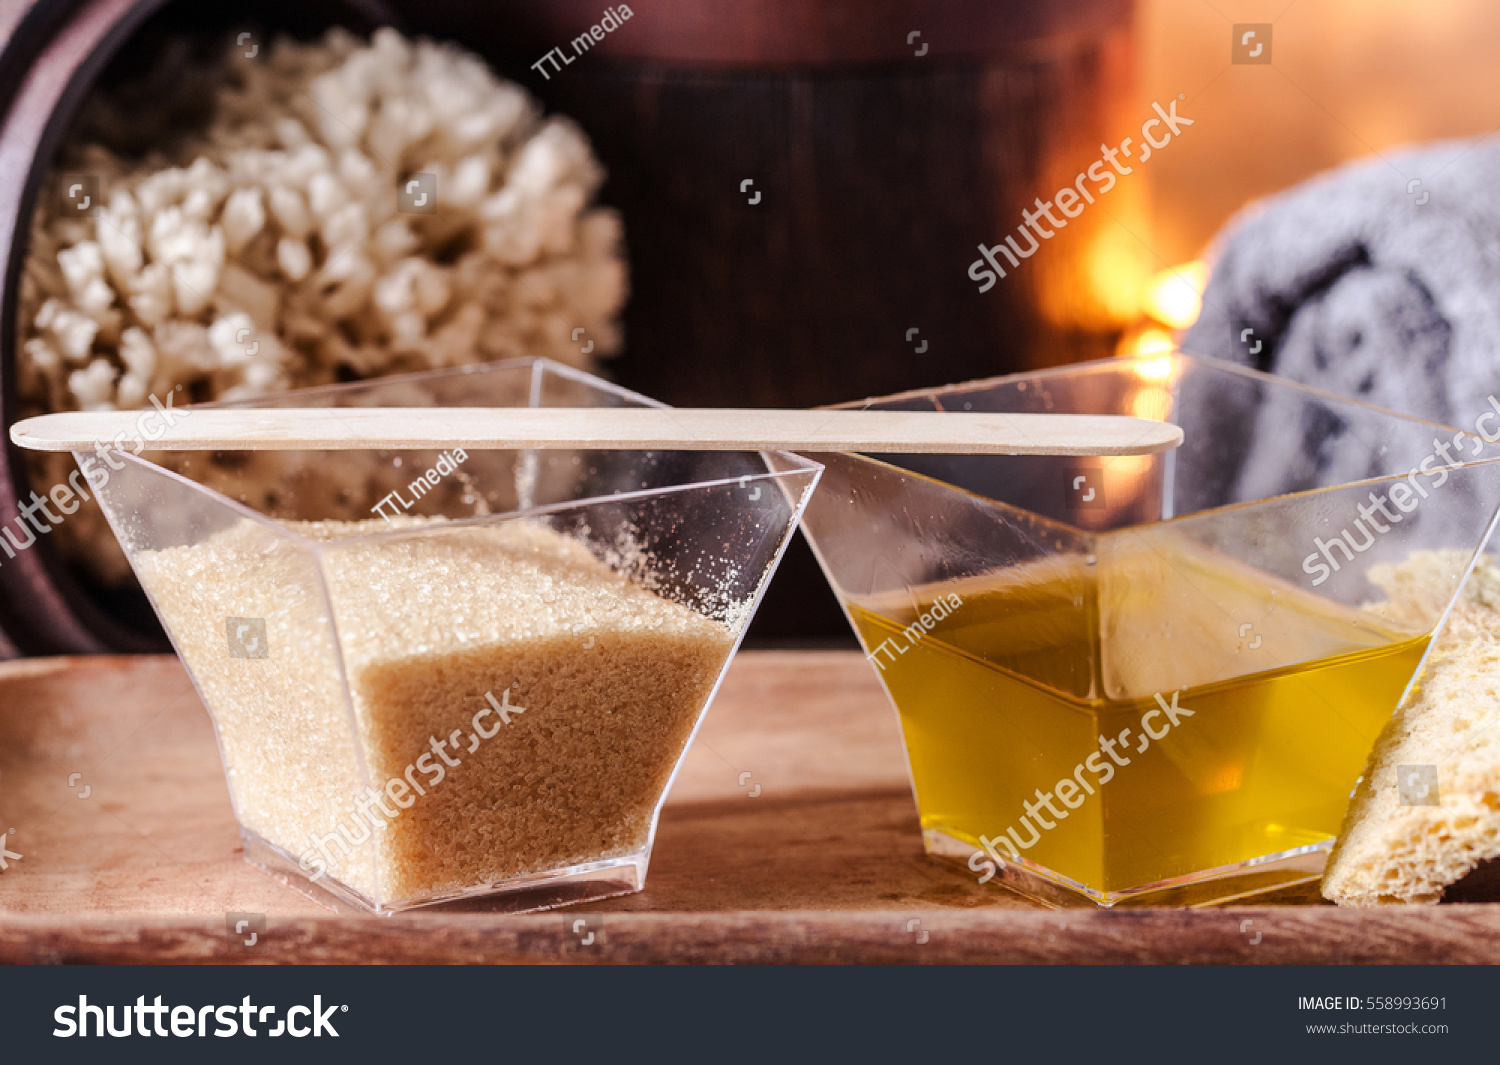 В масле есть сахар. Масло и сахар. Сахар и масло подсолнечное. Сахарный песок и растительное масло. Масло сахара.